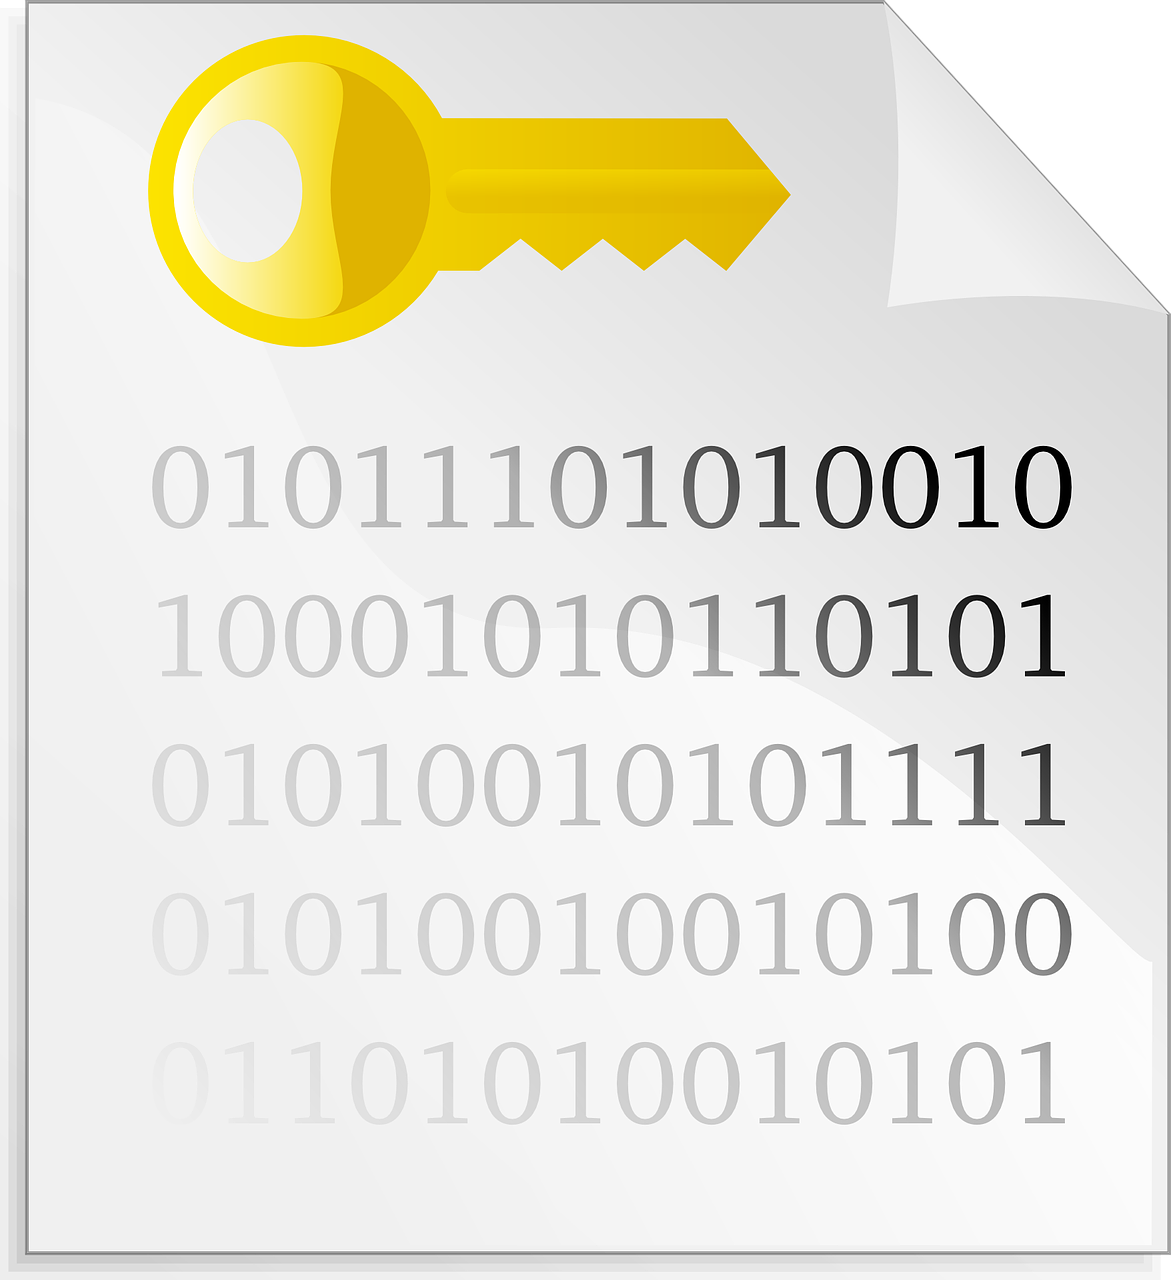 Authentification ssh par clé privée